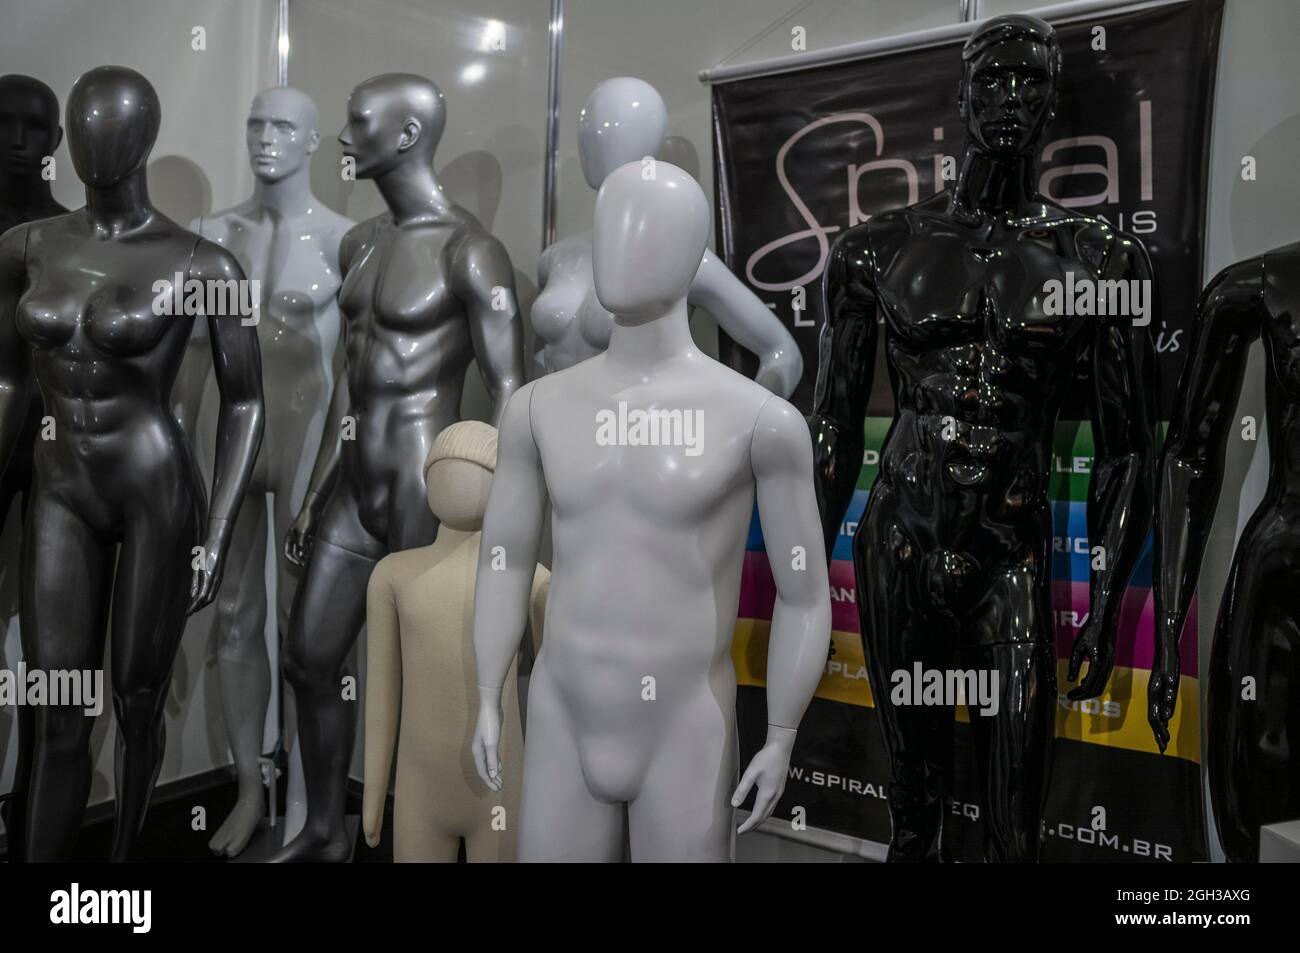 Dummies multiétnico (varios colores), multigénero (formas varios) y multigeneración (varios tamaños) en el almacén de la feria de la moda. Foto de stock